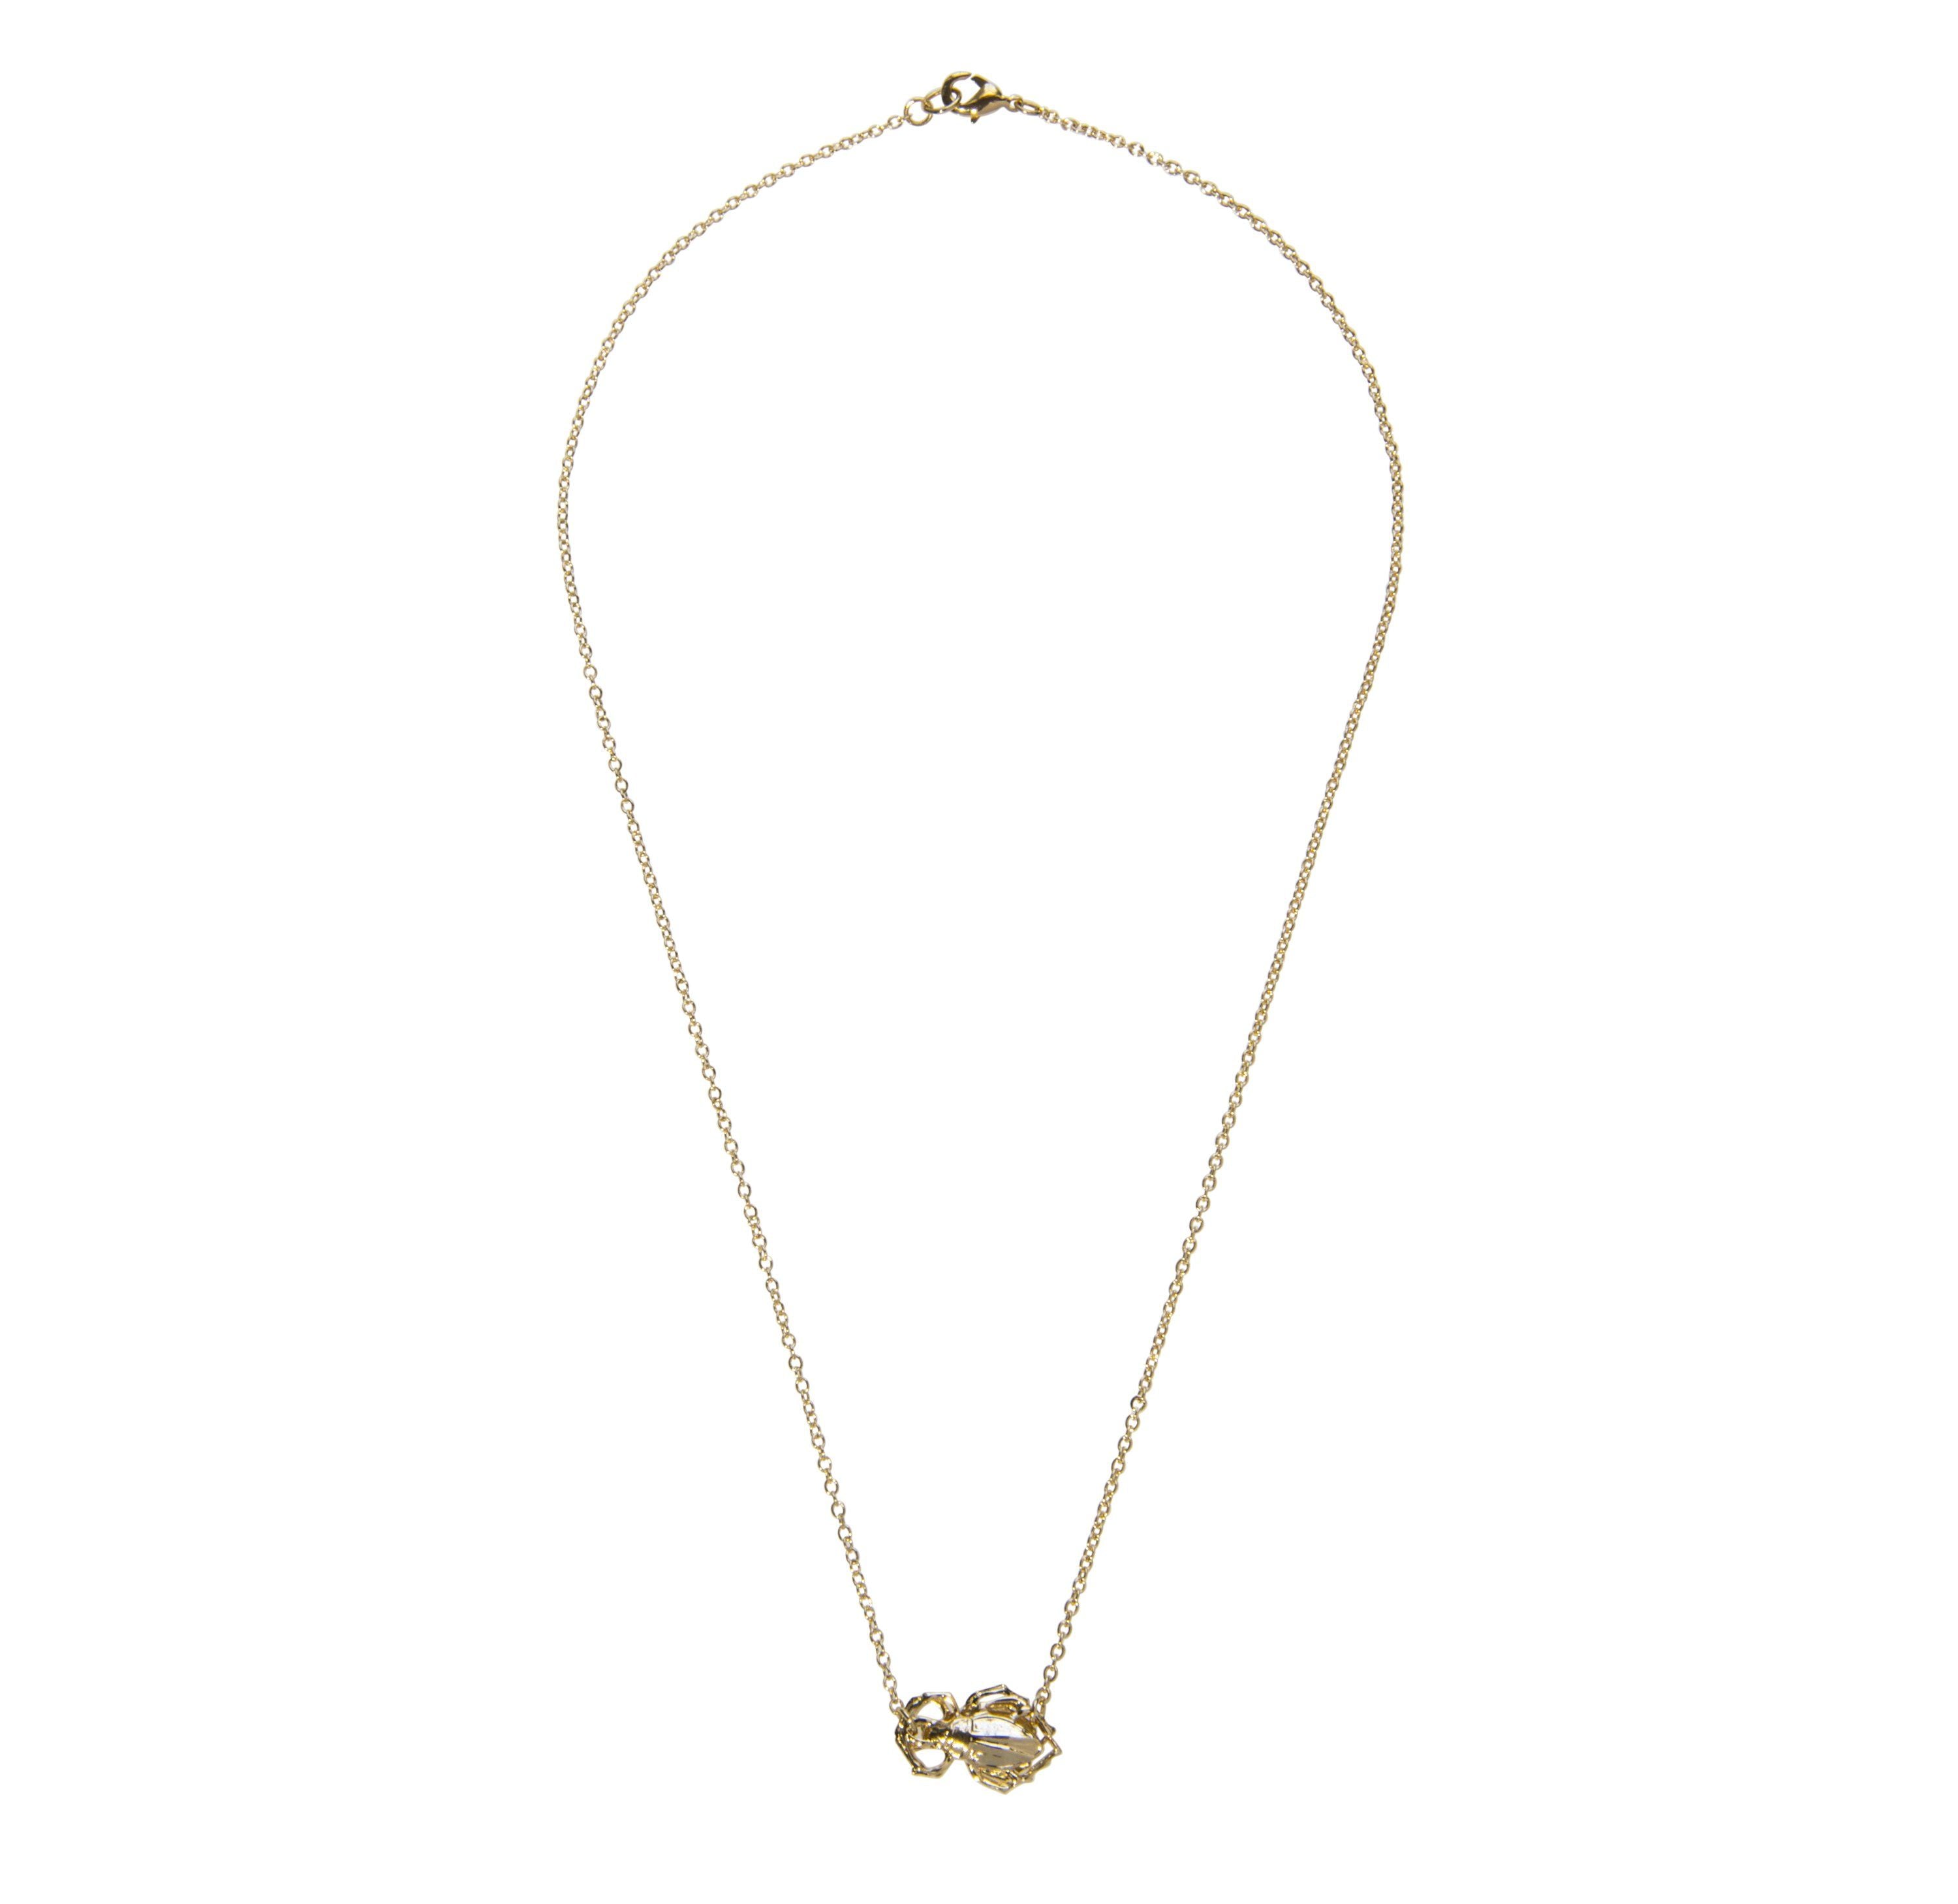 Single Goldbug Necklace